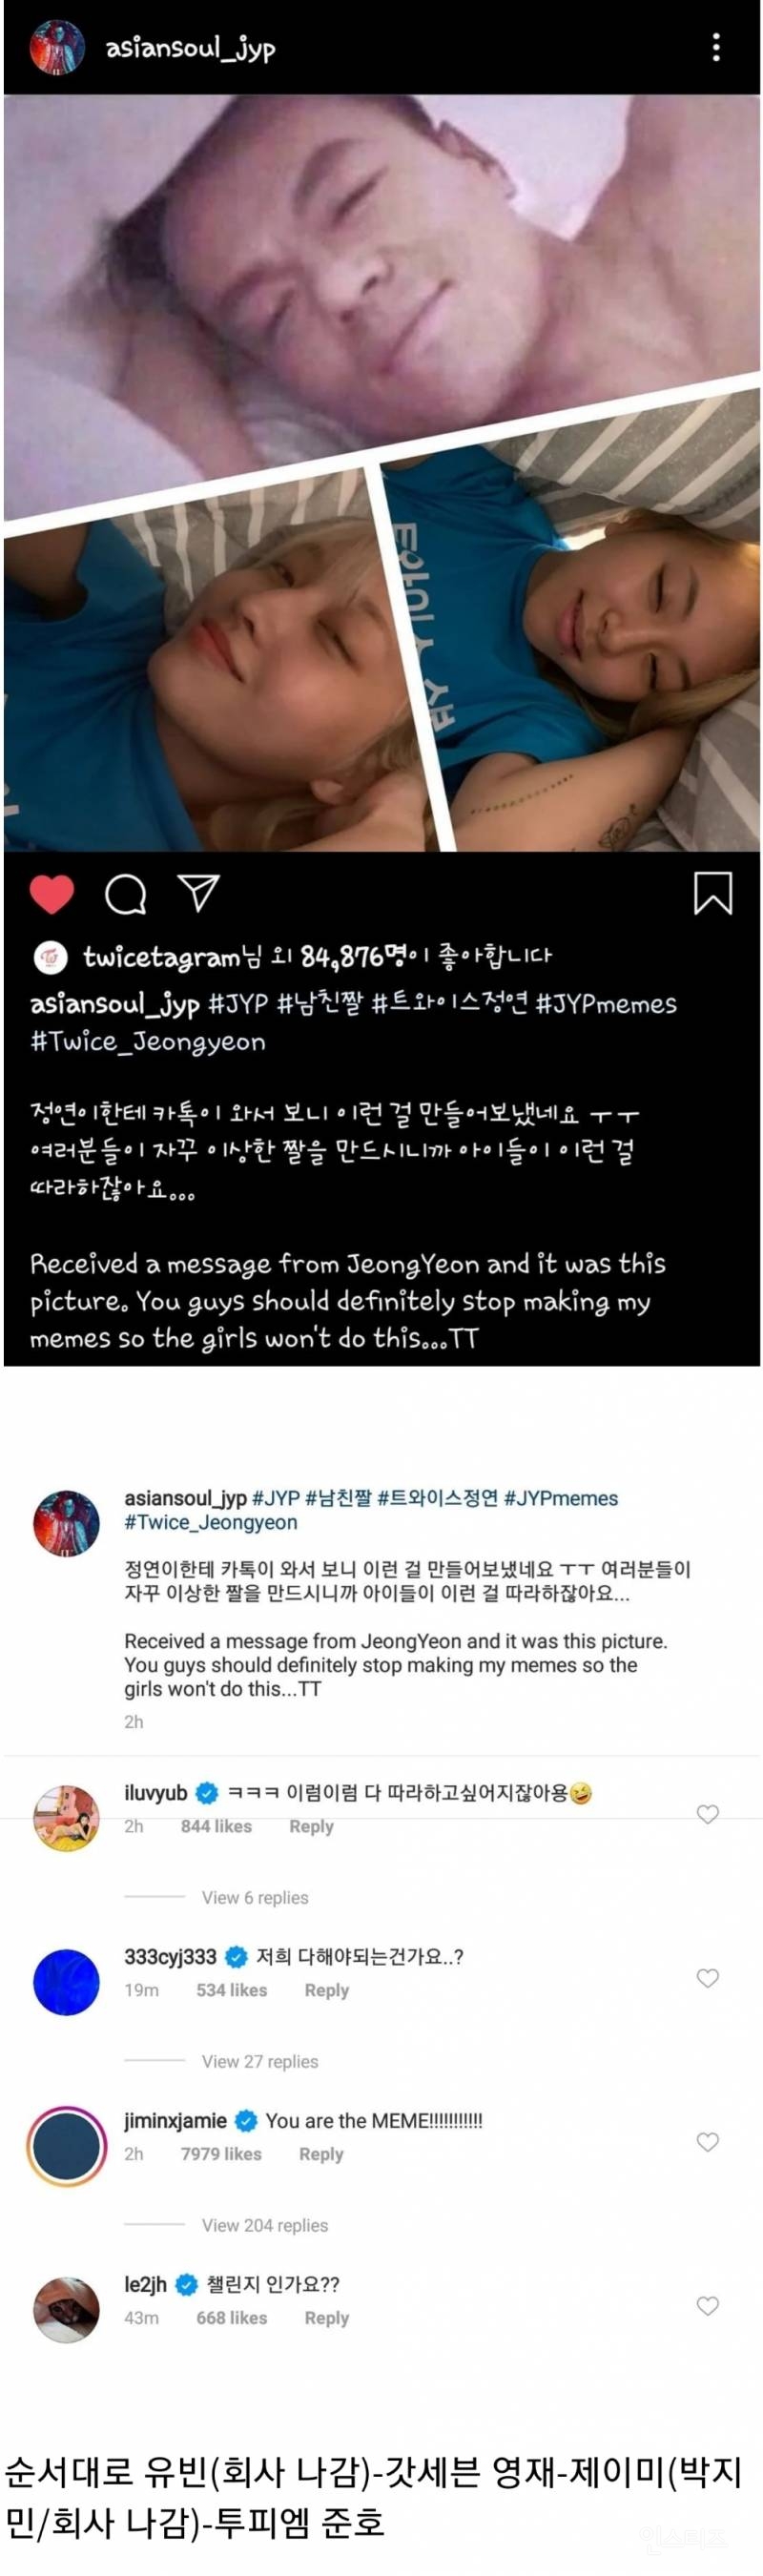 박진영 인스타에서 트와이스의 남친짤 따라잡기를 본 제왑돌들.jyp | 인스티즈